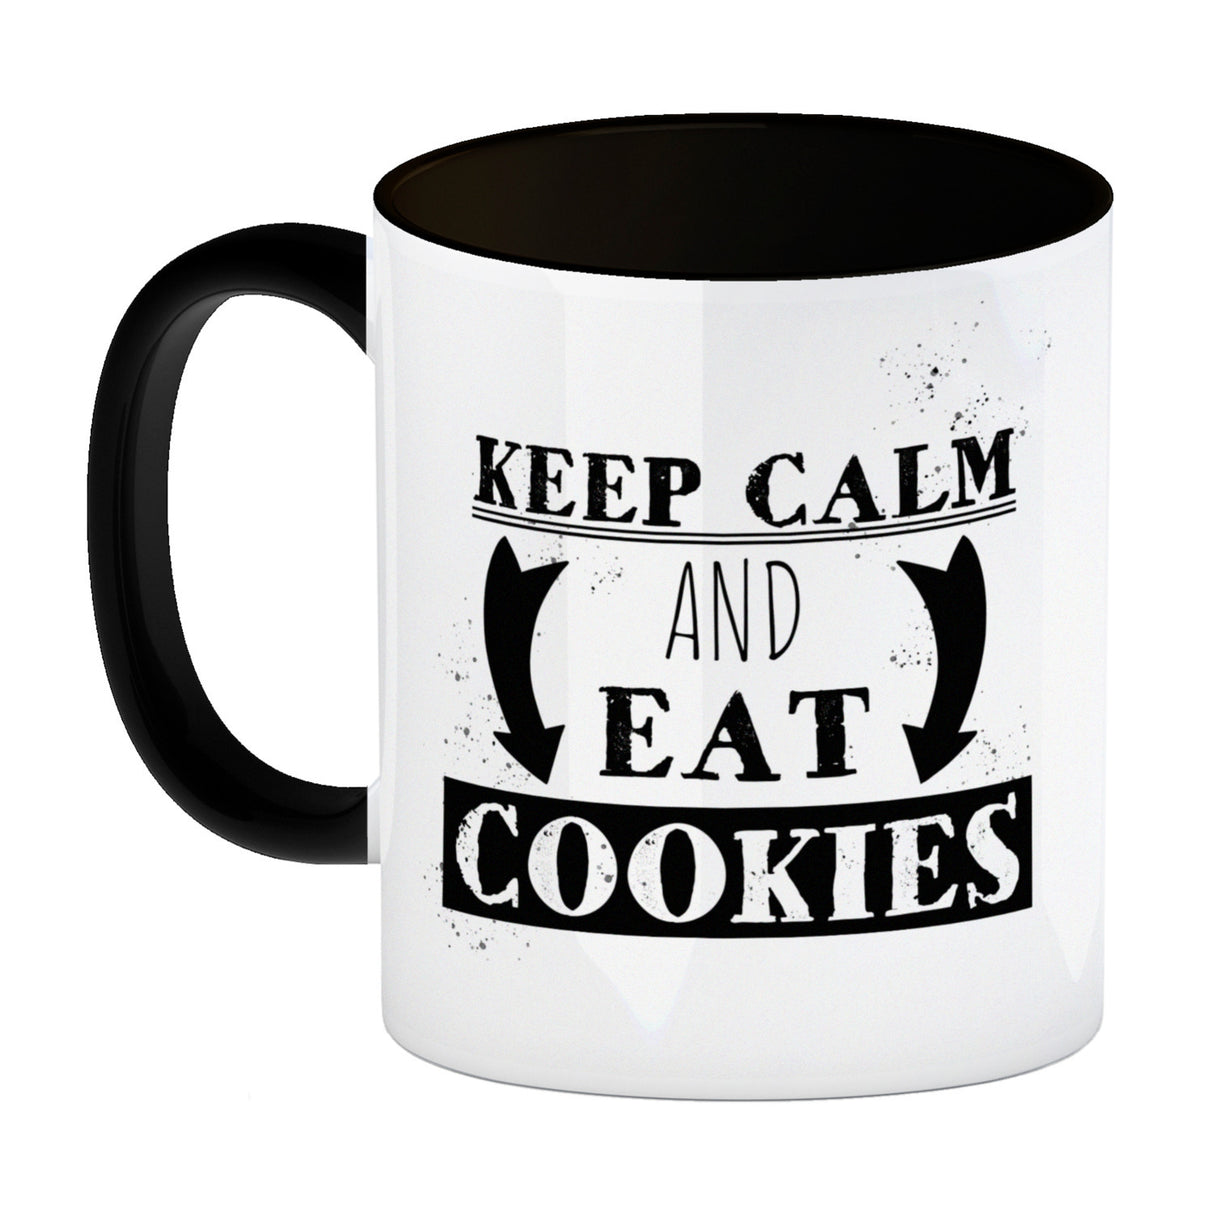 Keep calm and eat cookies Kaffeetasse mit lustigem Keks